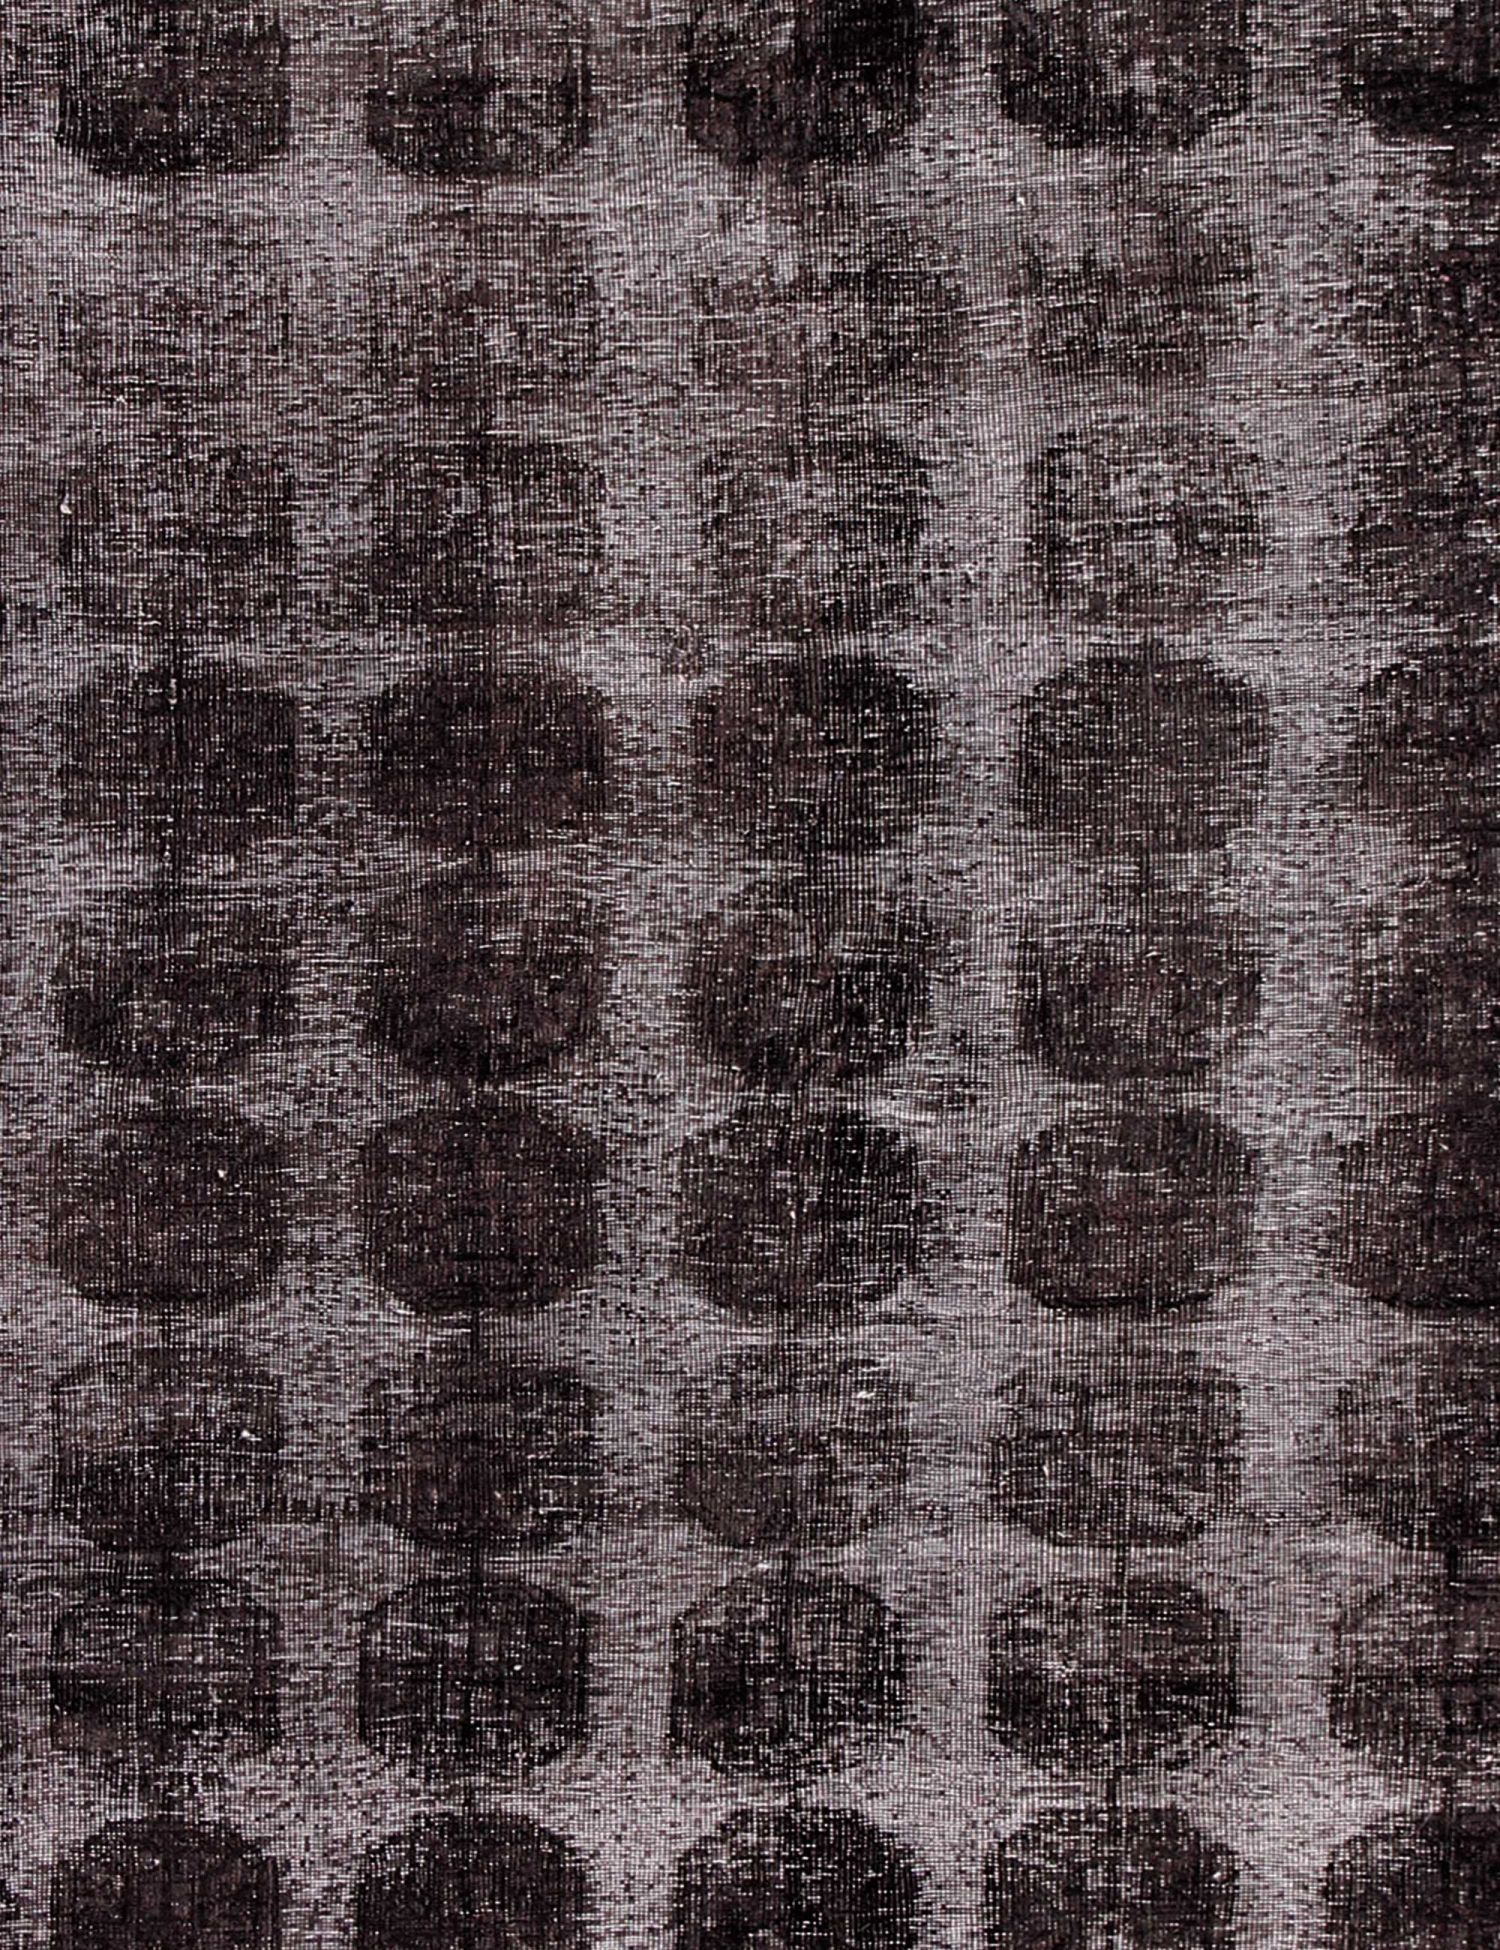 Persian Vintage Carpet  black <br/>235 x 149 cm